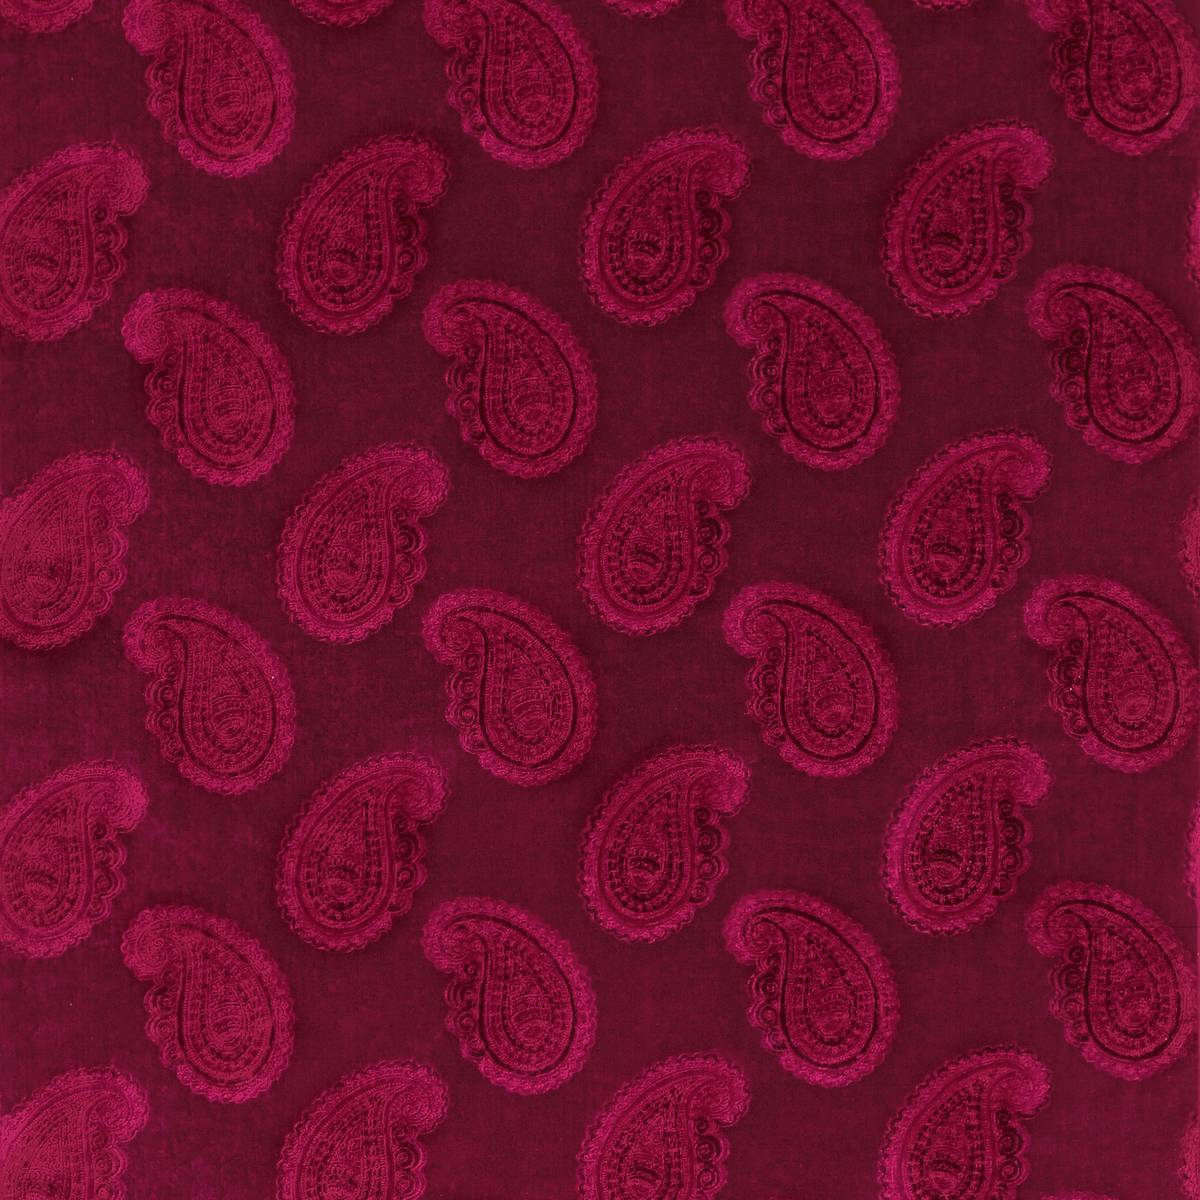 Orissa Velvet Burgundy Fabric by Zoffany